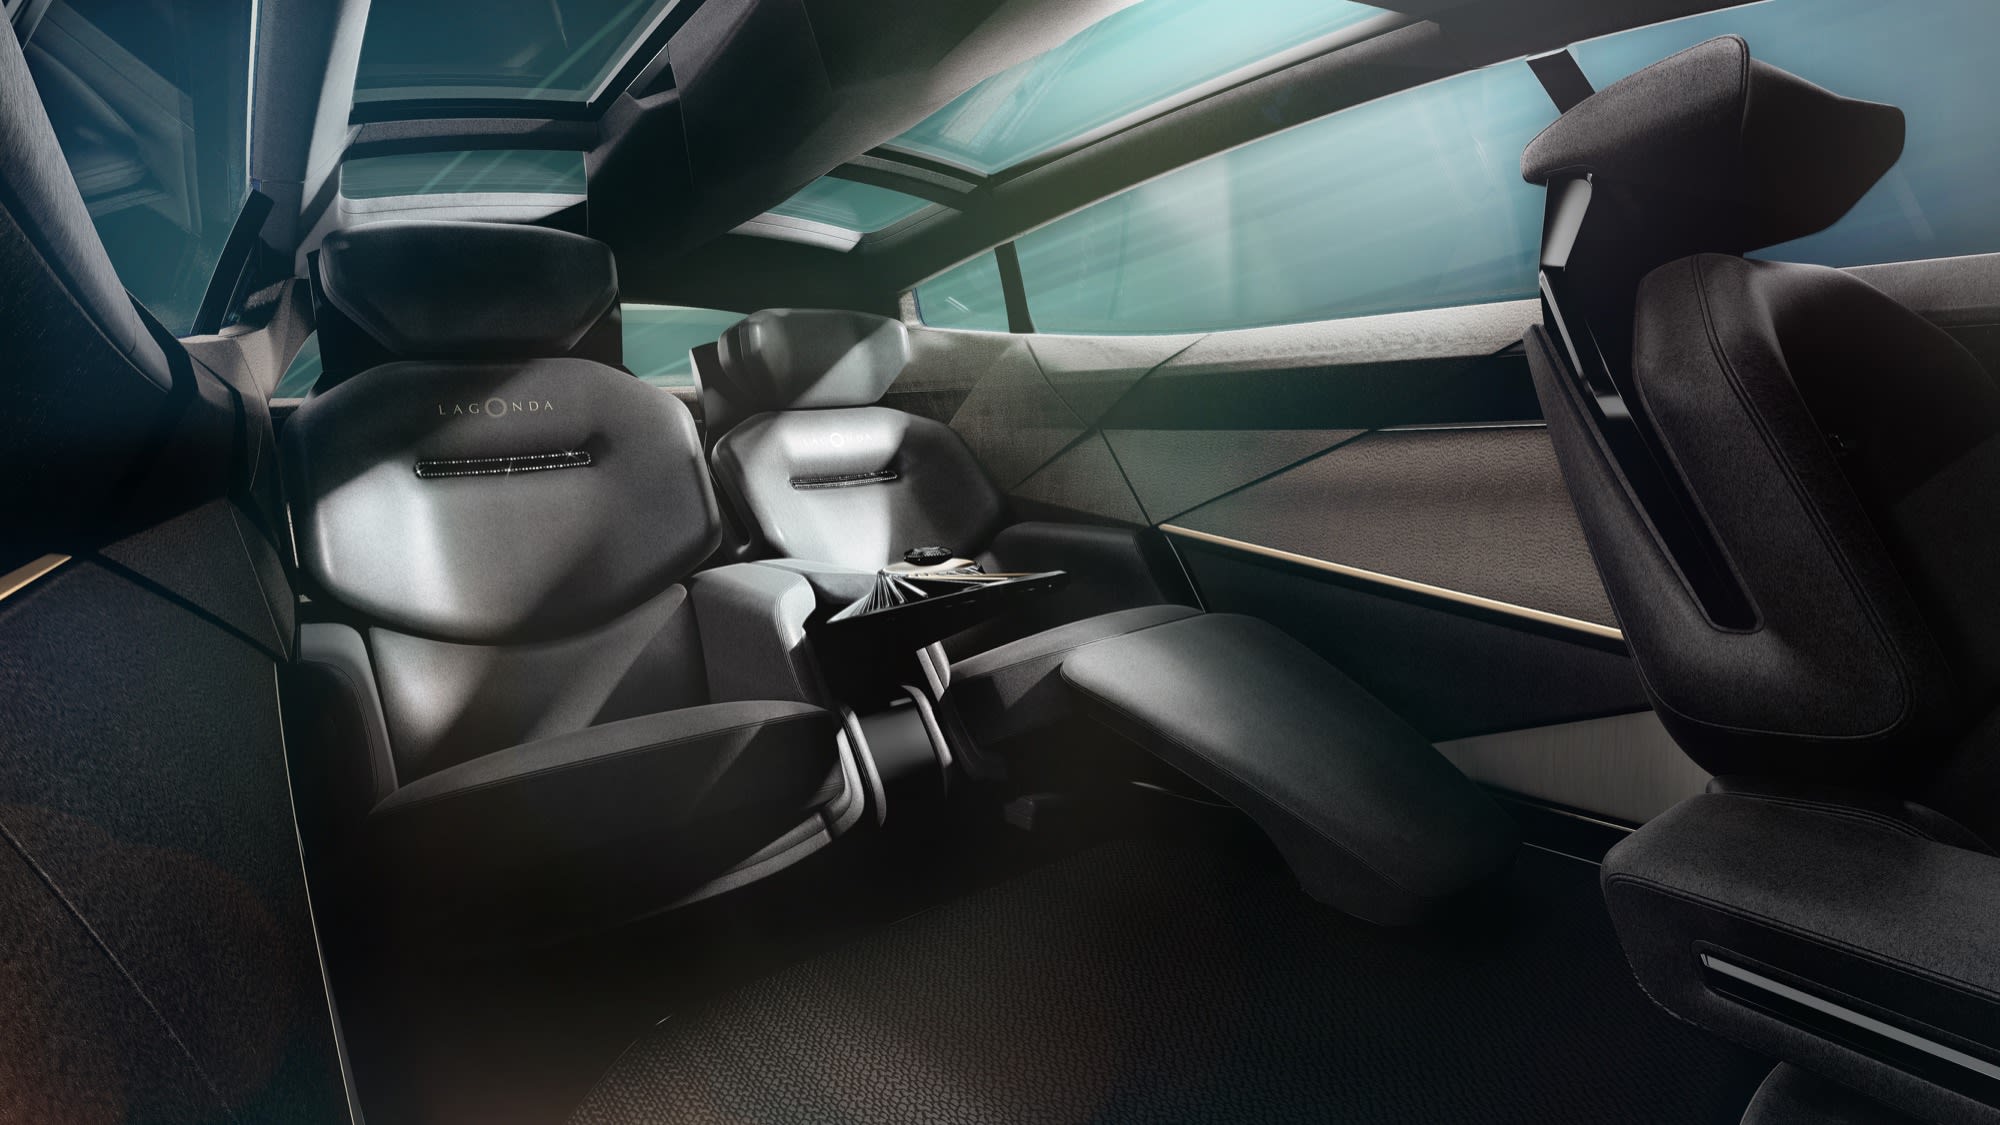 2021 Aston Martin Lagonda All-Terrain Concept SUV